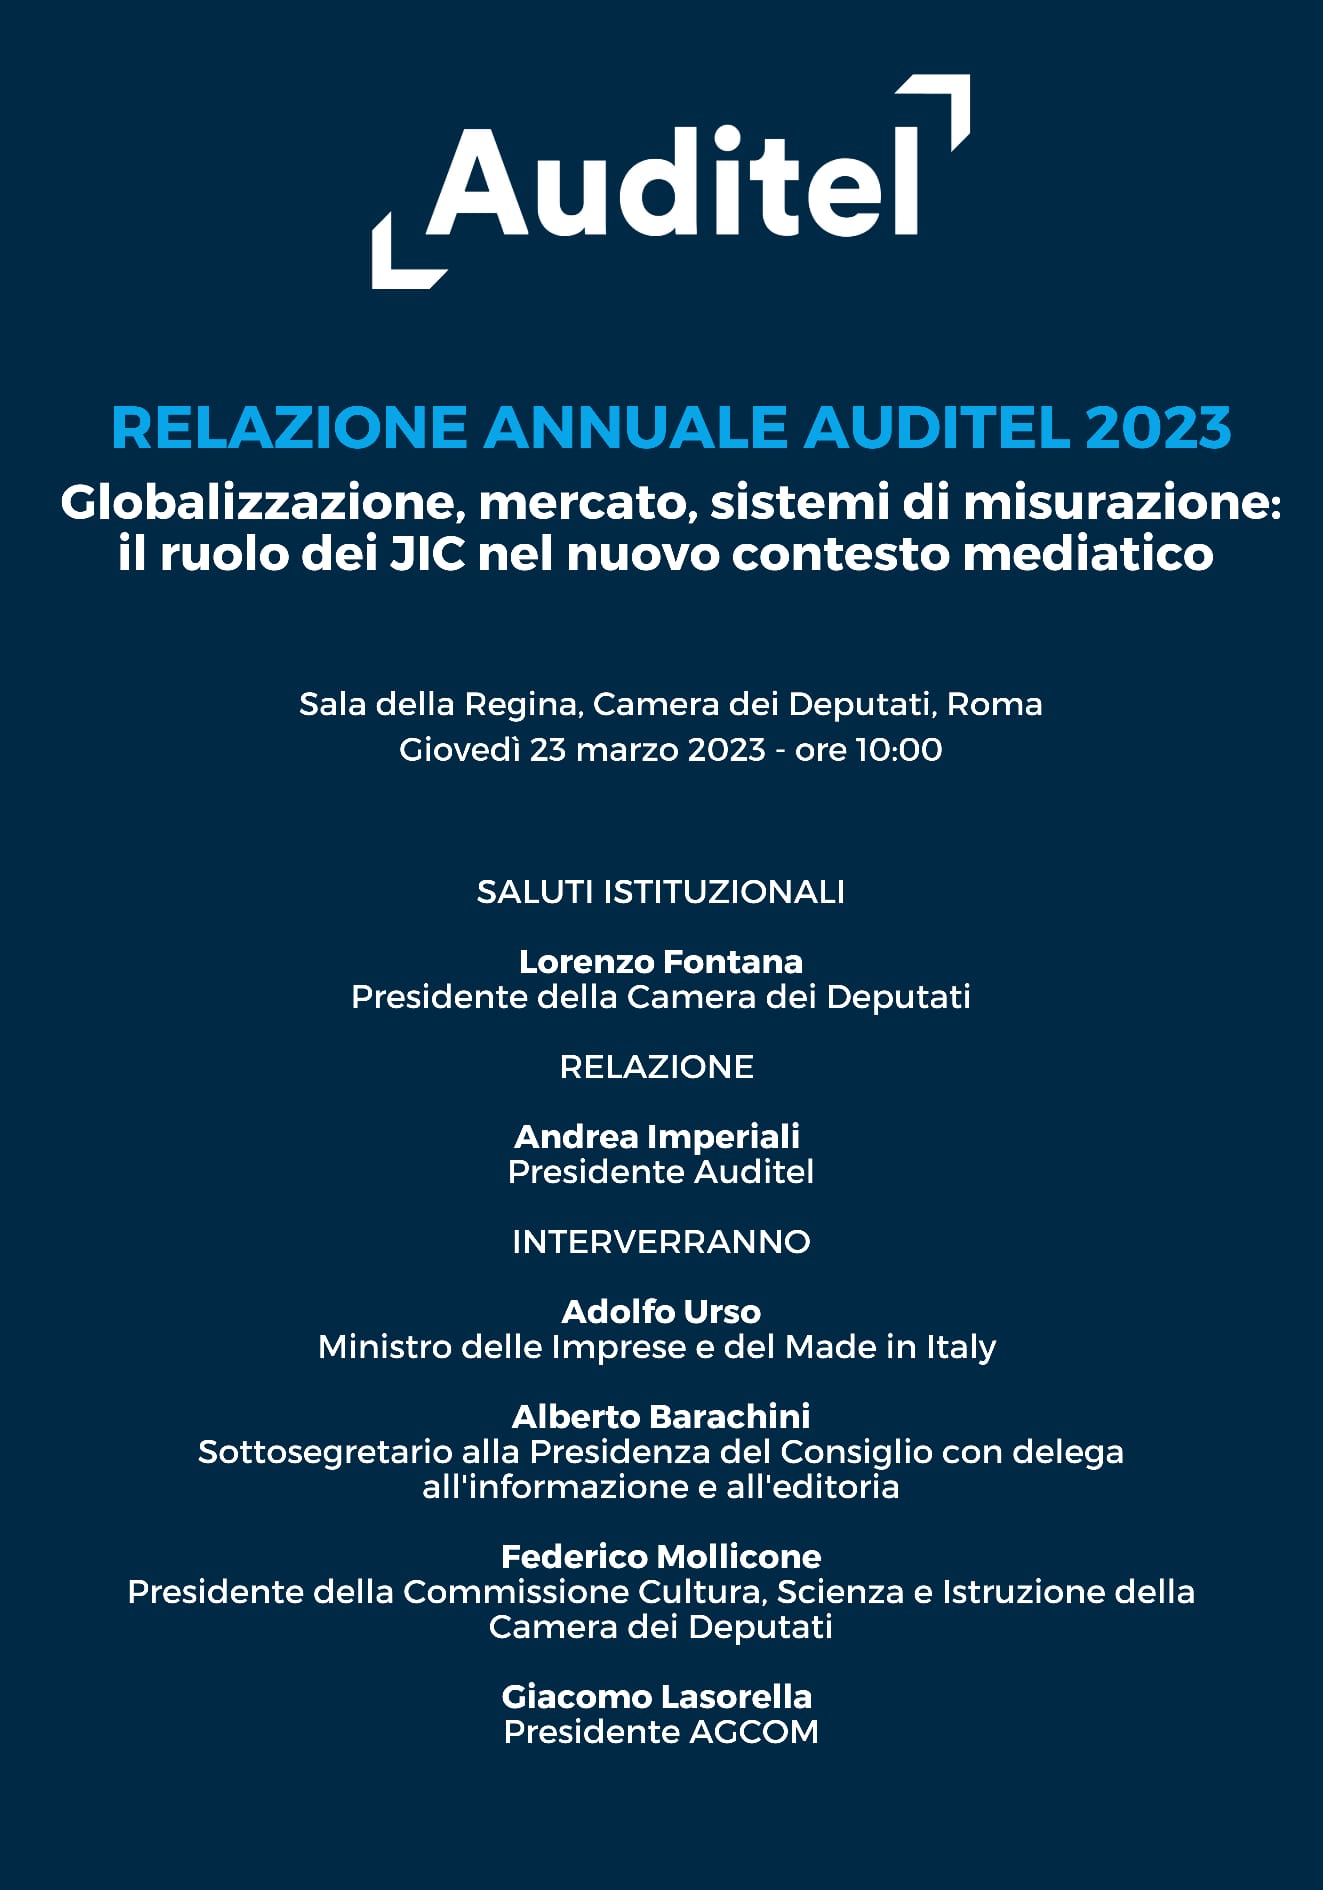 Presentazione della Relazione Annuale Auditel 2023  “Globalizzazione, mercato, sistemi di misurazione: il ruolo dei JIC nel nuovo contesto mediatico”